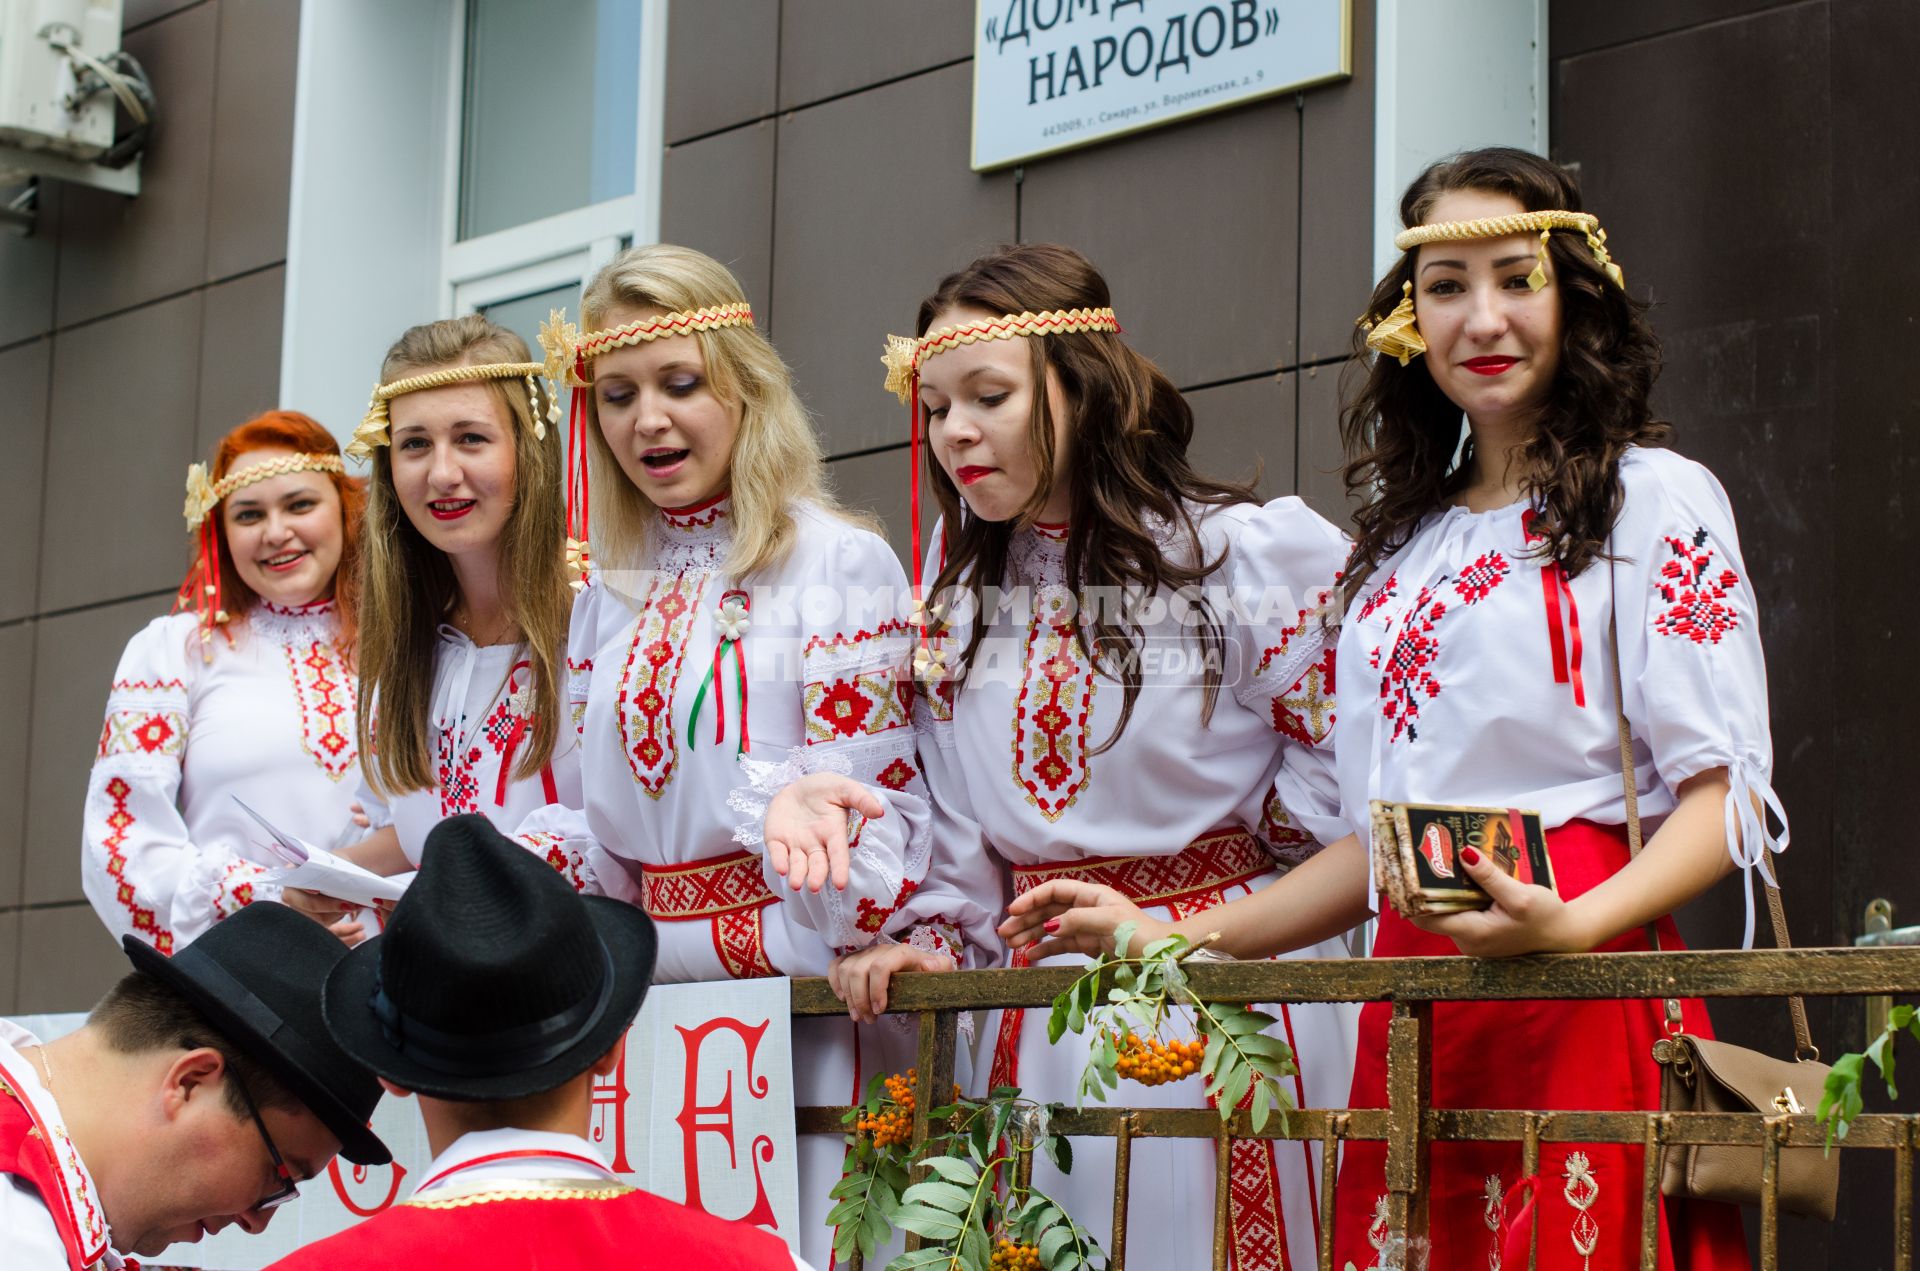 Самара. Традиционная белорусская свадьба прошла в Доме Дружбы народов.